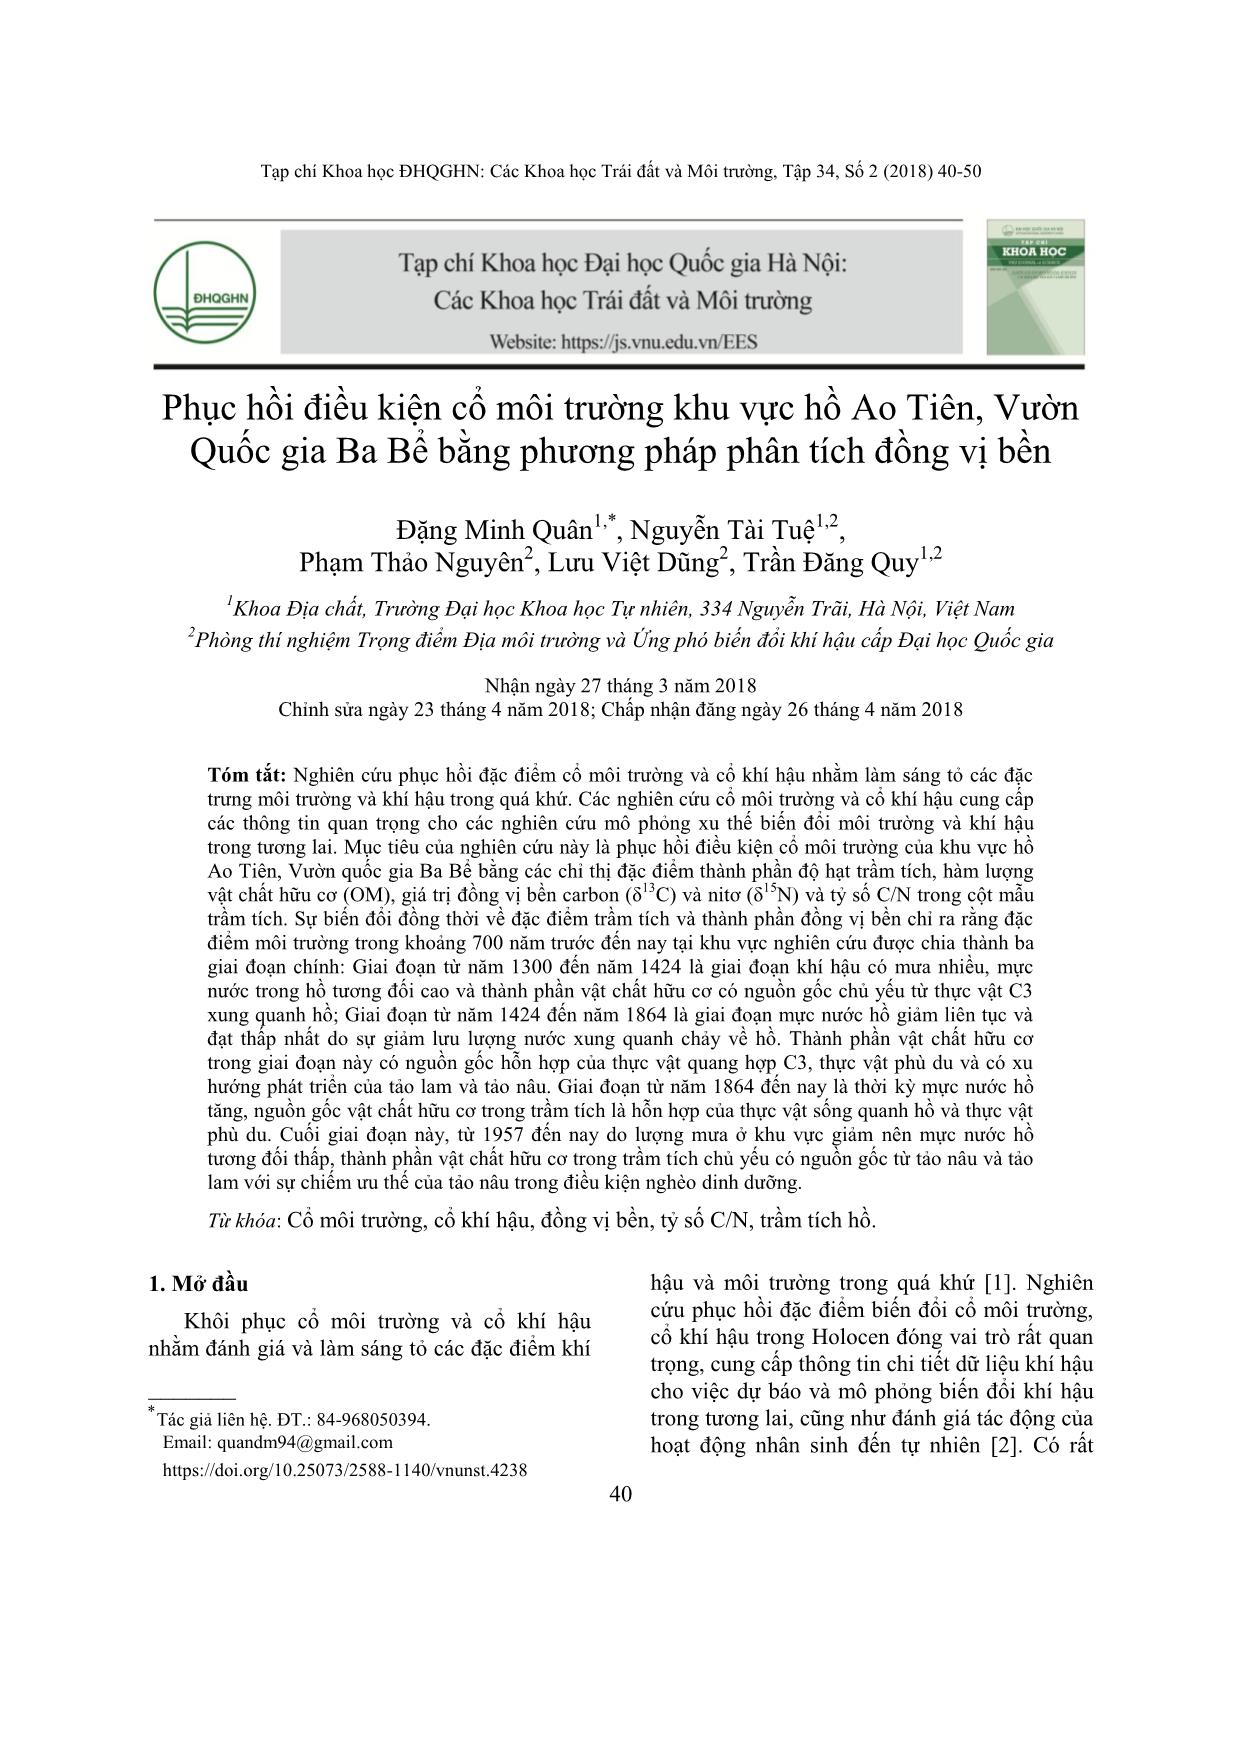 Phục hồi điều kiện cổ môi trường khu vực hồ Ao Tiên, Vườn Quốc gia Ba Bể bằng phương pháp phân tích đồng vị bền trang 1